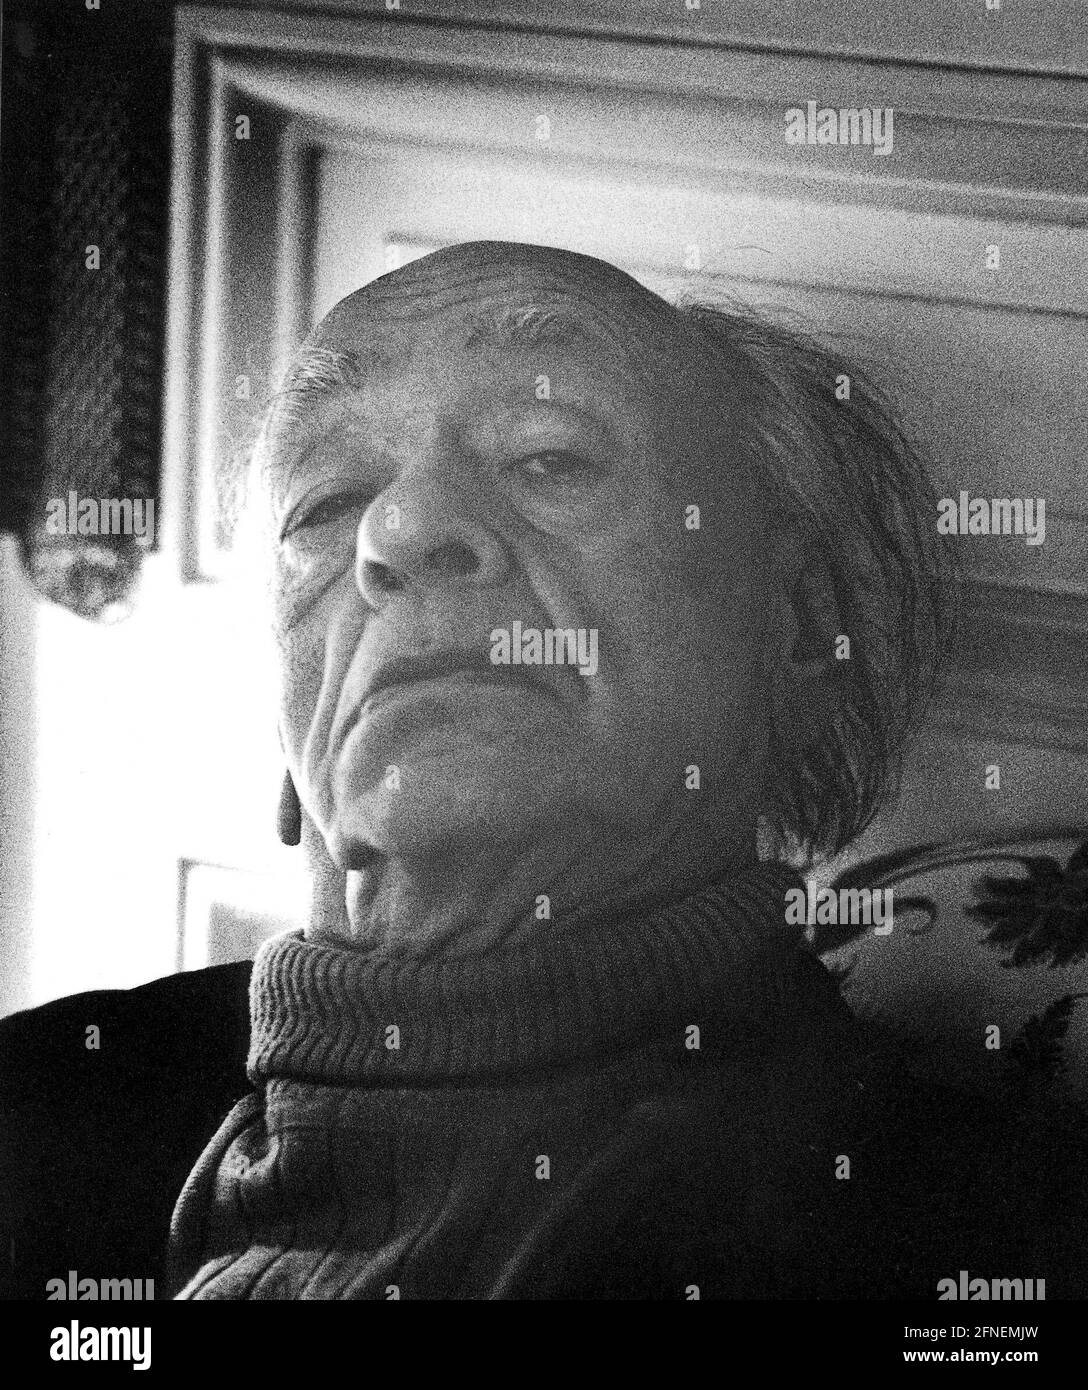 Eugene Ionesco (n. 26 novembre 1912 a Slatina (n.. 13 novembre 1912) - d. 28 marzo 1994 a Parigi) scrittore e drammaturgo francese (teatro assurdo), Parigi (1991). [traduzione automatizzata] Foto Stock